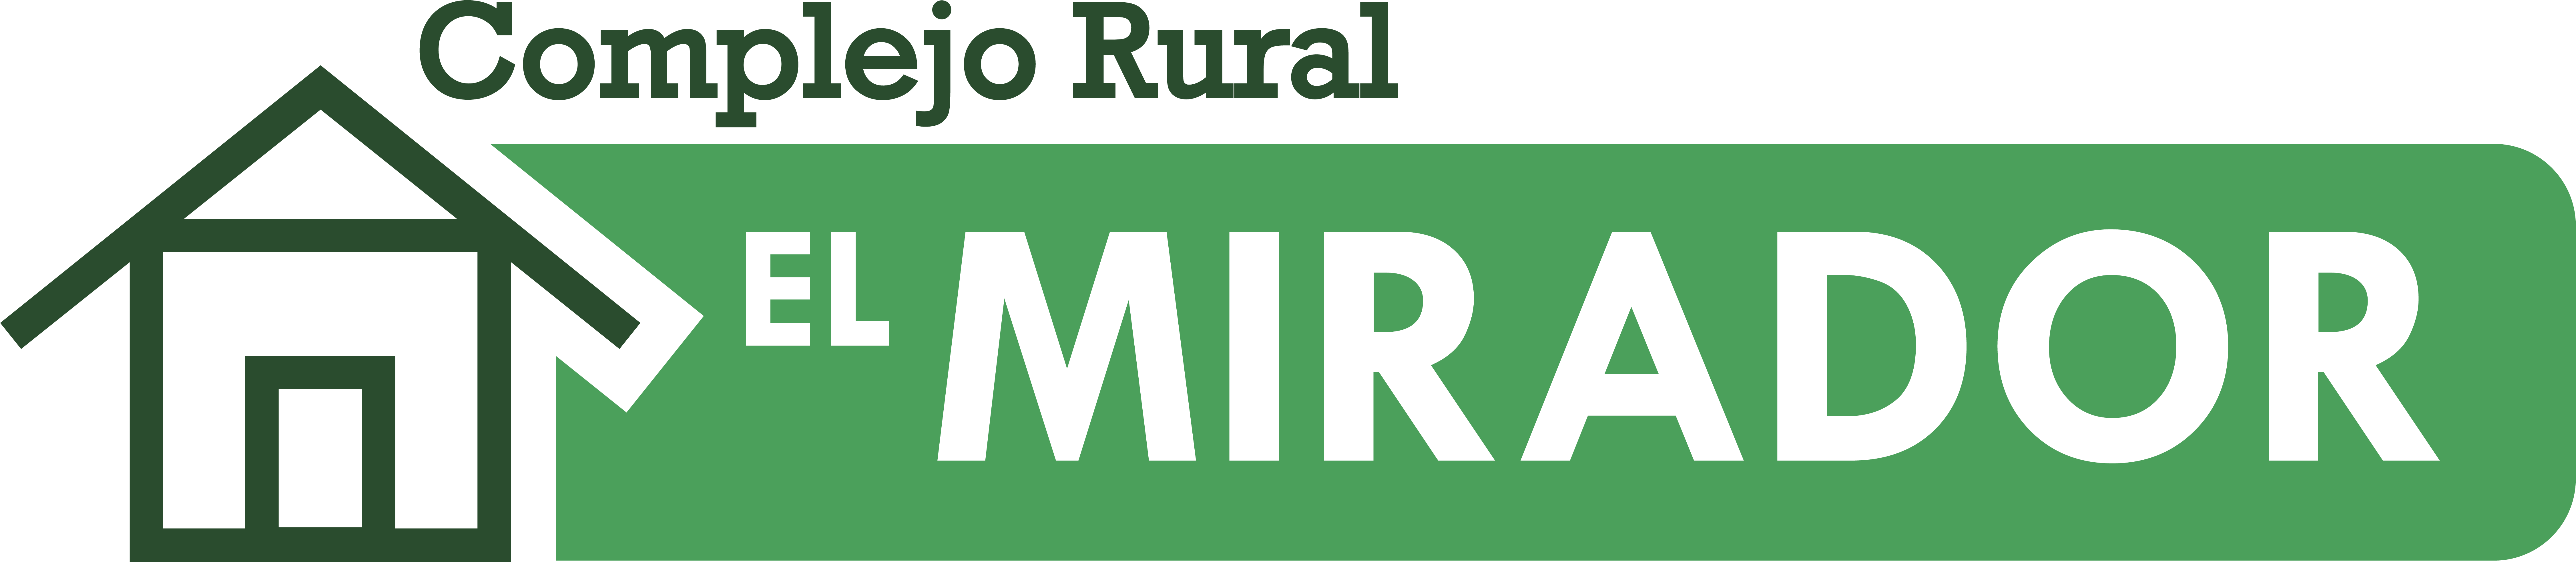 Complejo Rural El Mirador